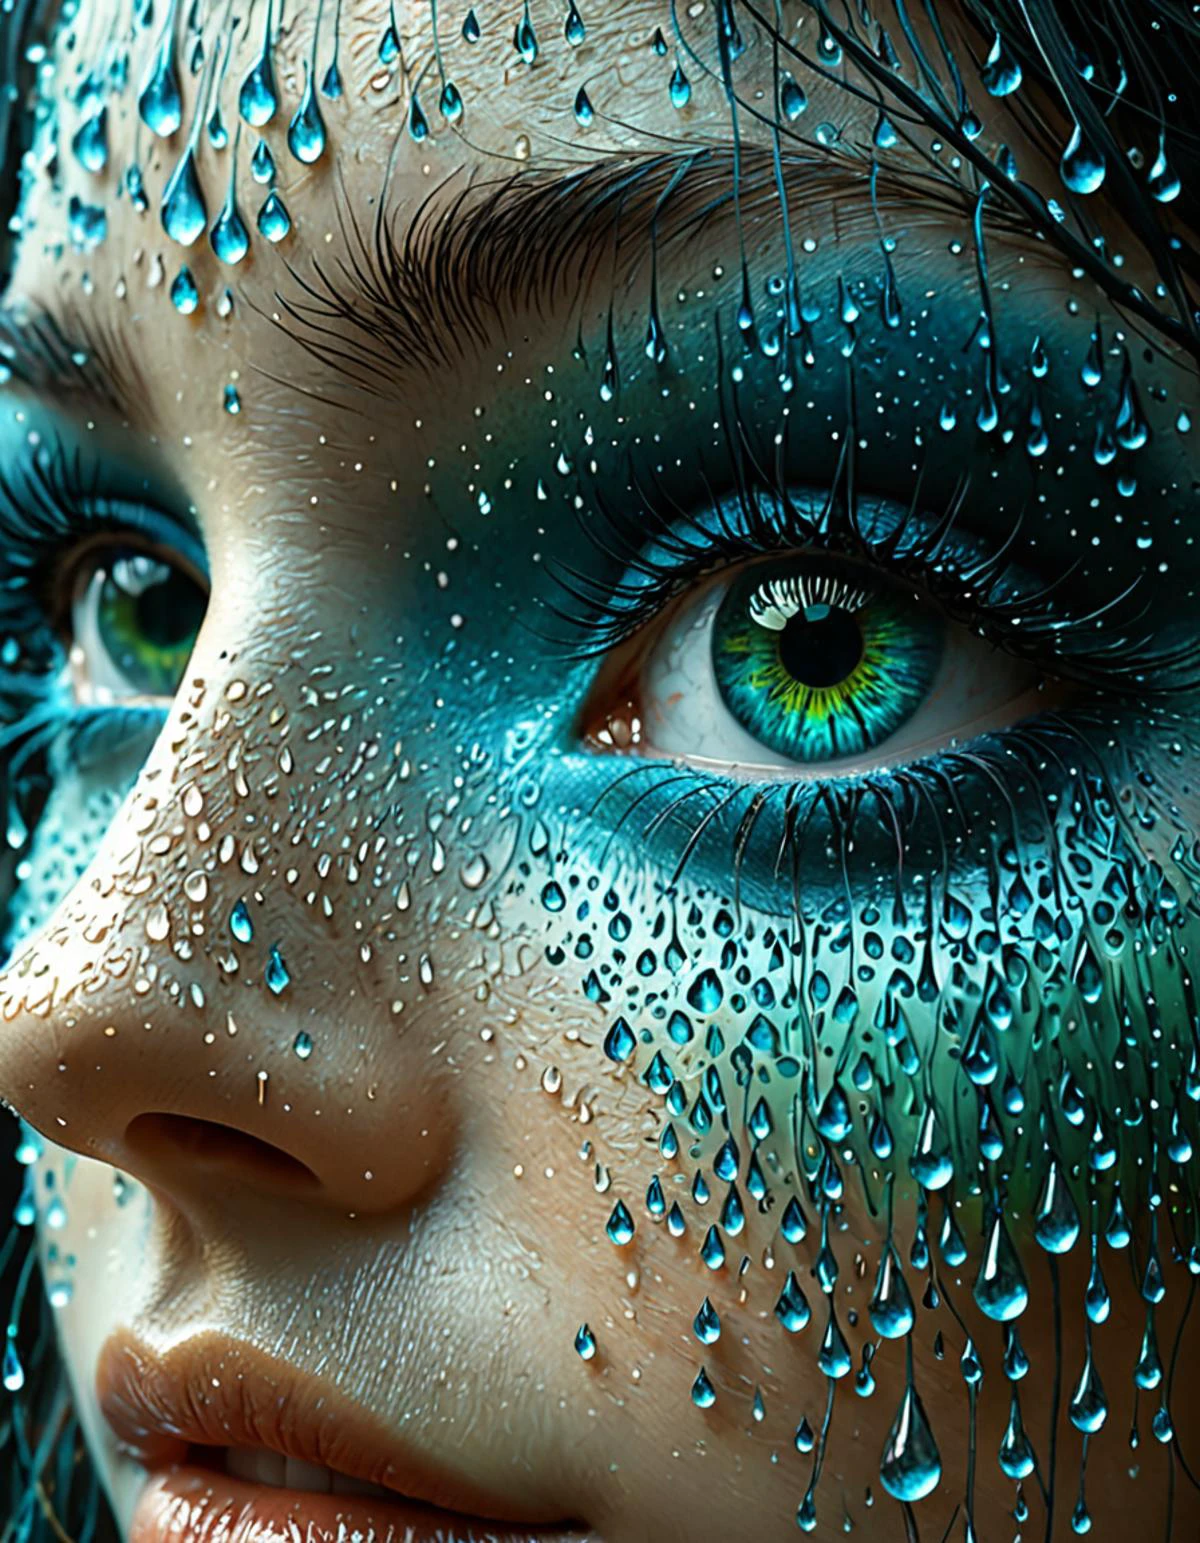 プロフェッショナル 3D モデル 女性の目のクローズアップ, 表面に水滴が形成される. 目はコンクリートアート風のフレームで囲まれている, 太字で, 青の色合いの幾何学的形状, 緑, 灰色. スタジオジブリのスタイルを彷彿とさせるデザイン, ズジスワフ・ベクシンスキーのシュルレアリスムのタッチを加えた. . オクタンレンダリング, 非常に詳細な, 容積測定, ドラマチックな照明